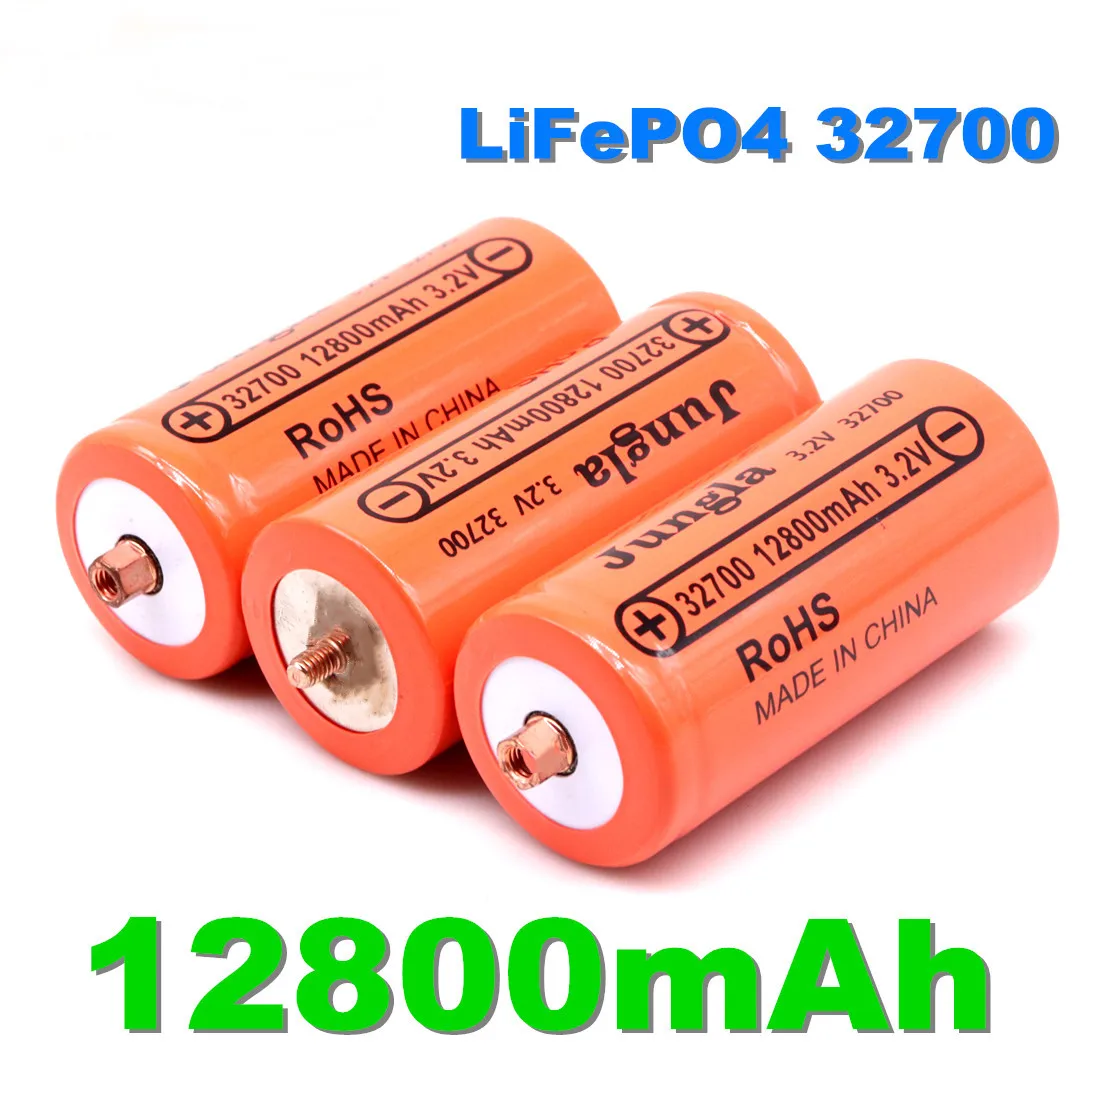 Аккумуляторная батарея lifepo4 100% originale 32700 3,2 В 12800 мАч профессиональная литий-фер-фосфатная аккумуляторная батарея avec vis1